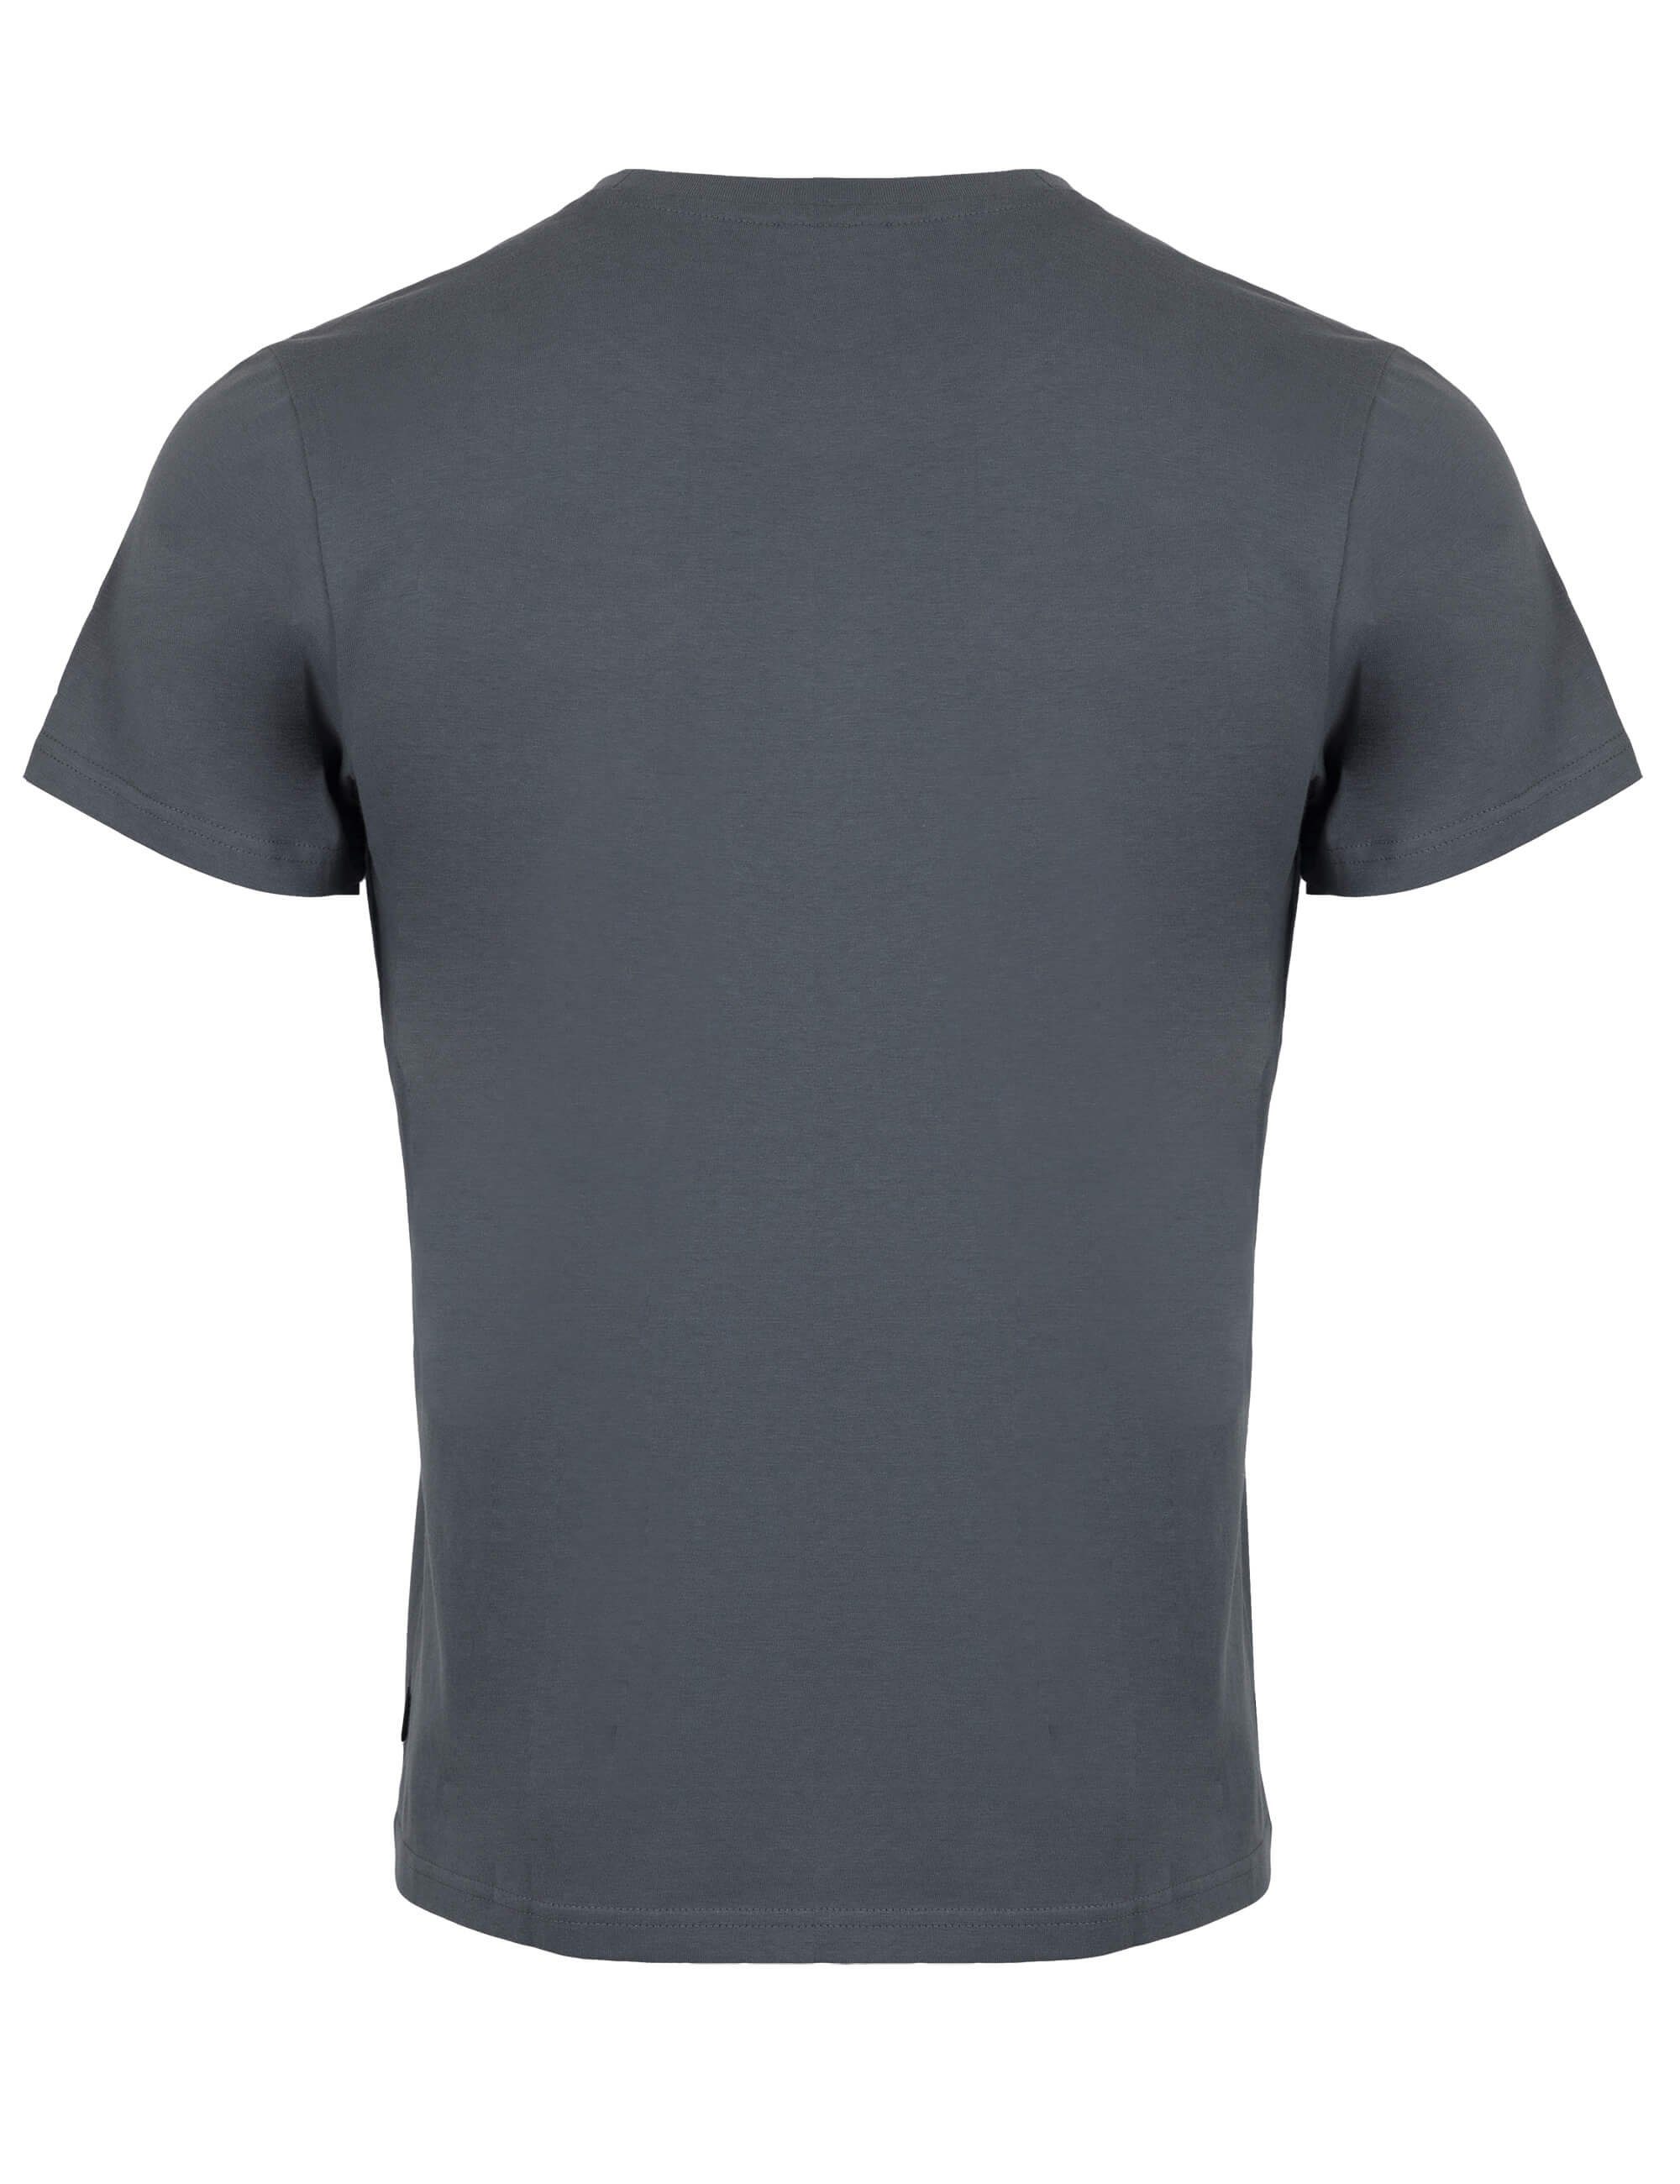 % (1-tlg) 100 anthra T-Shirt ROADSIGN und Logoprint Rundhalsausschnitt, mit australia Logo-Aufdruck Baumwolle